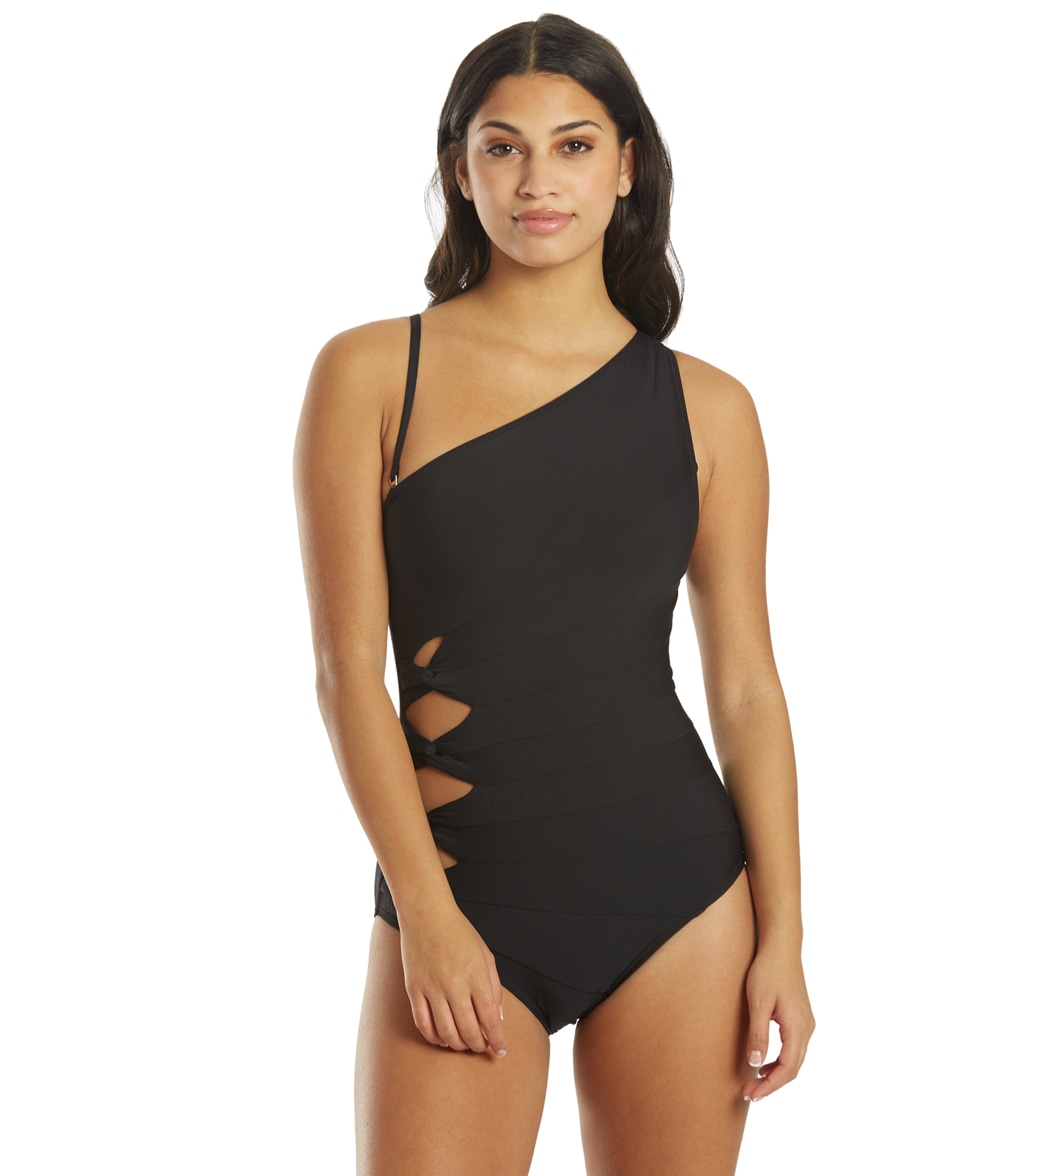 Carmen Marc Valvo Women's Twisted Tides One Shoulder Piece Swimsuit - Black 10 - Swimoutlet.com